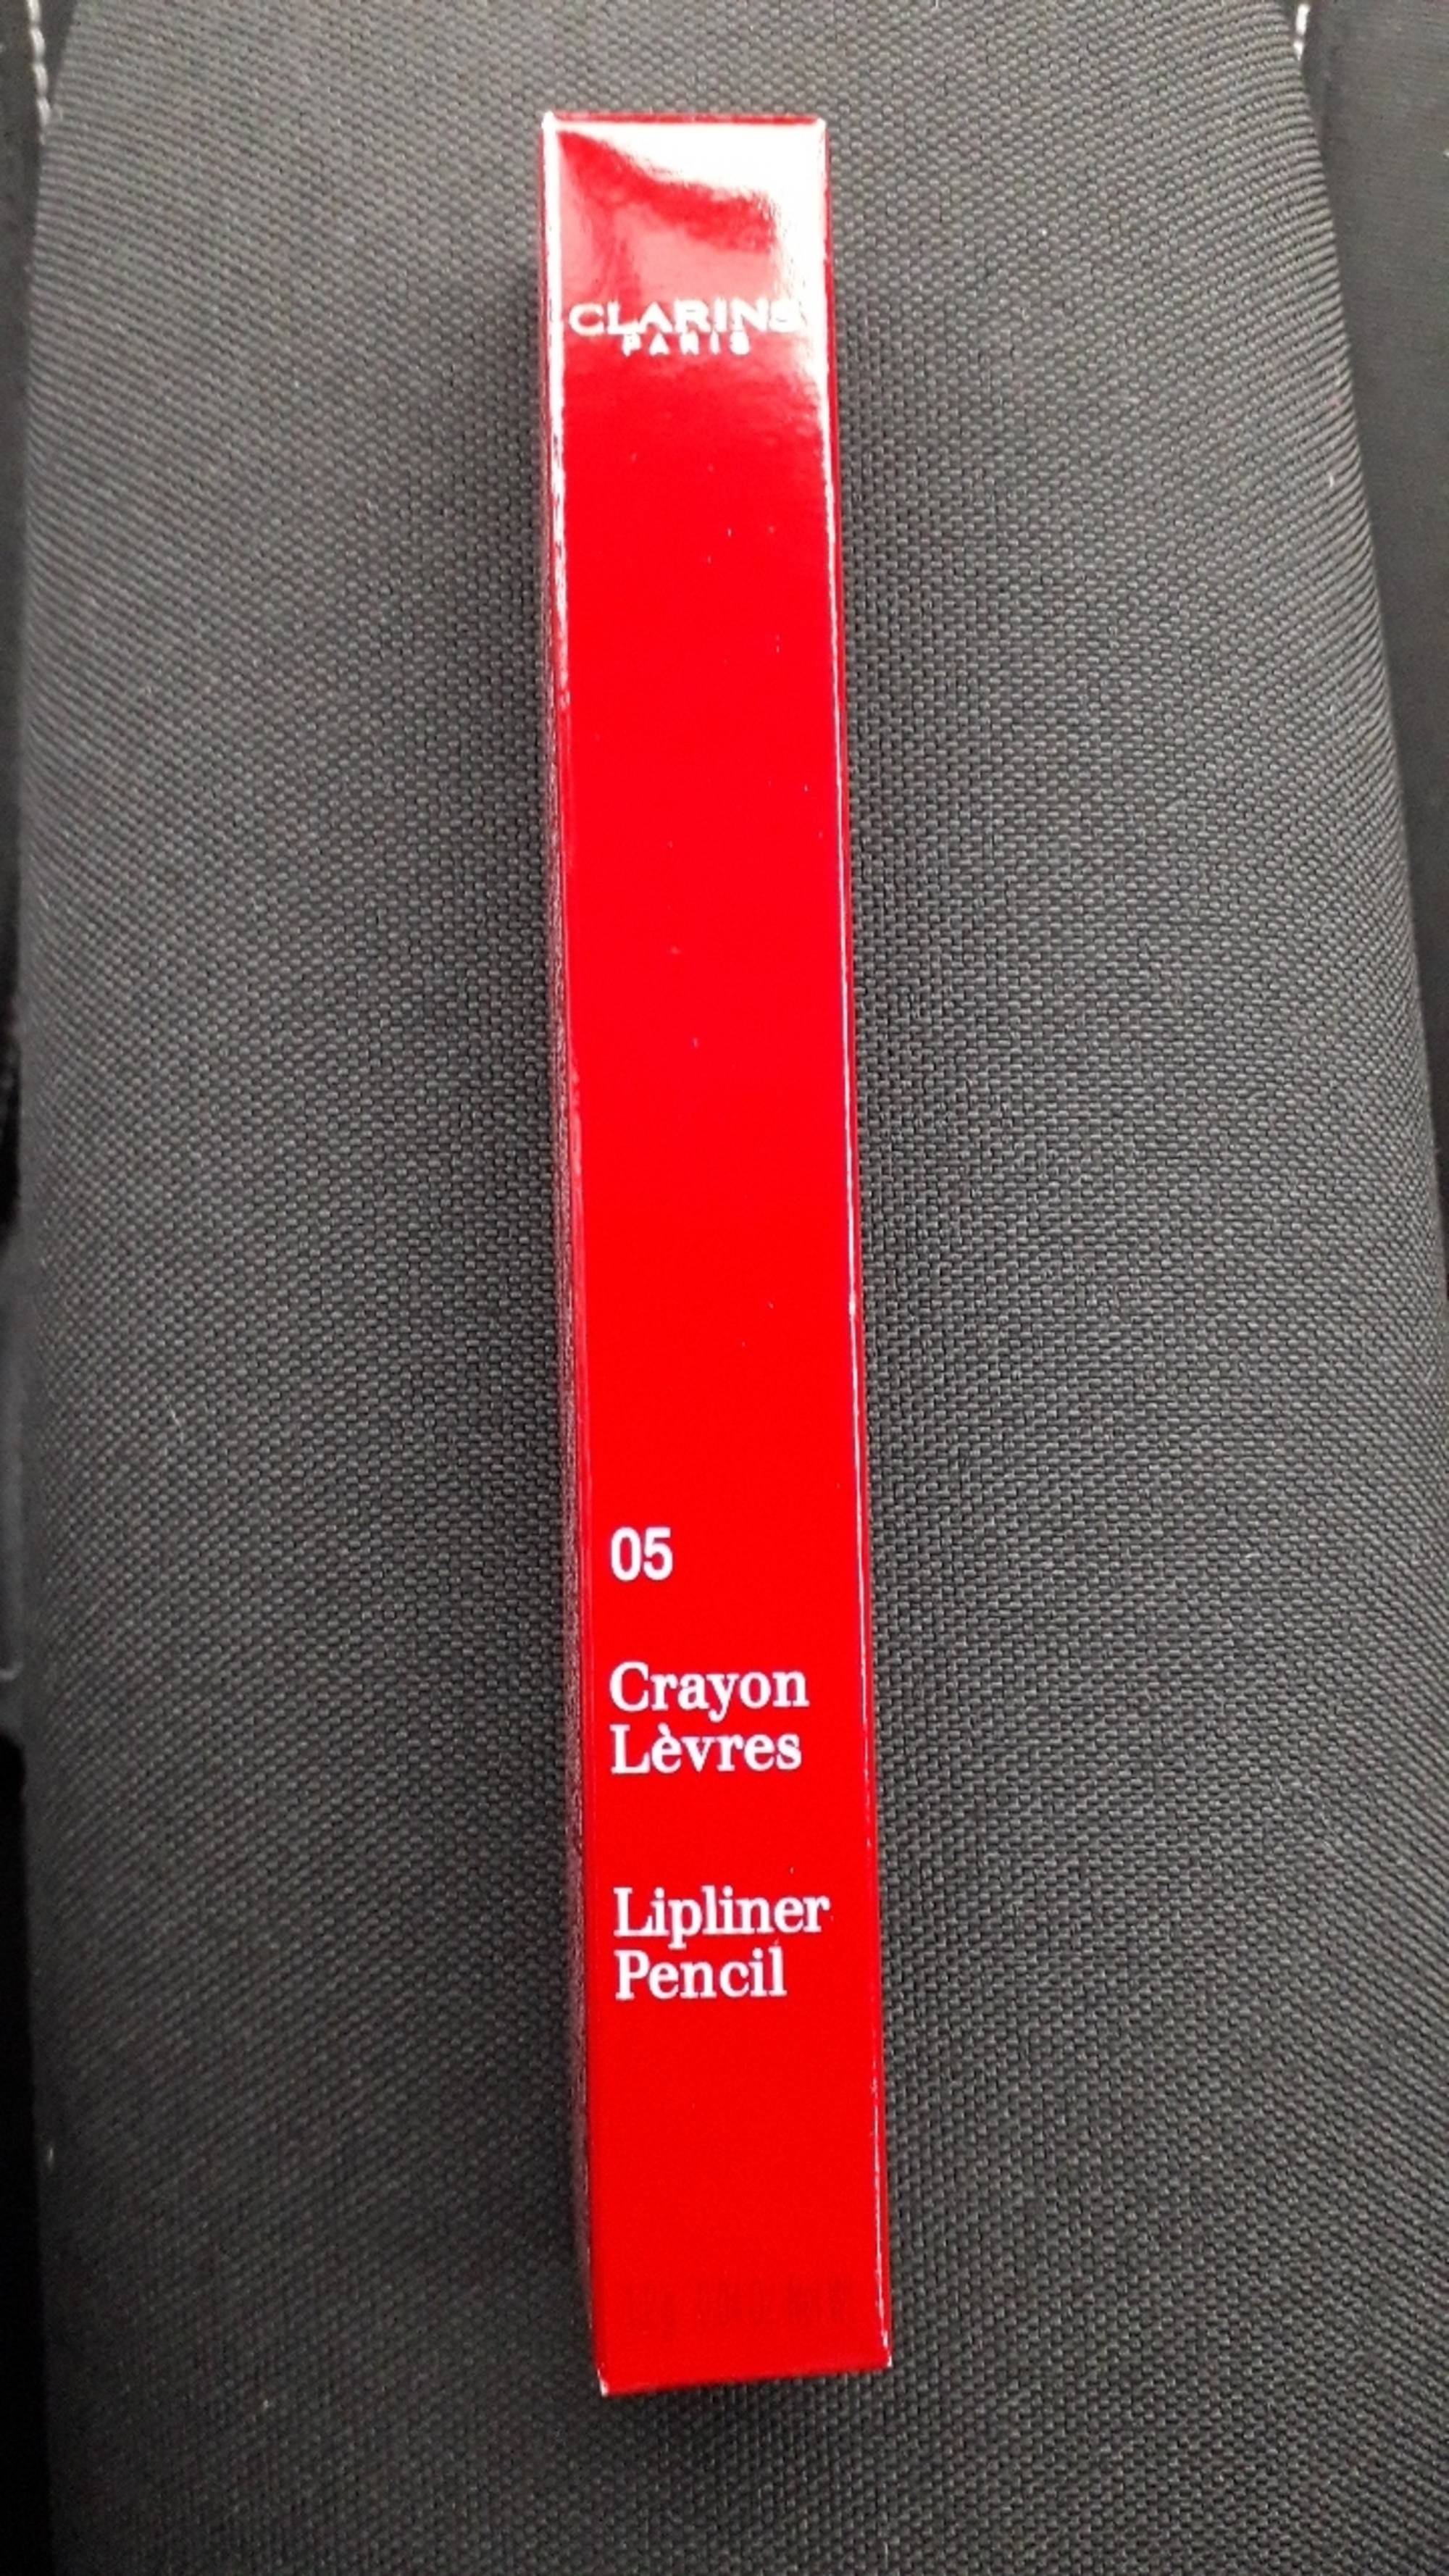 CLARINS - Crayon lèvres 05